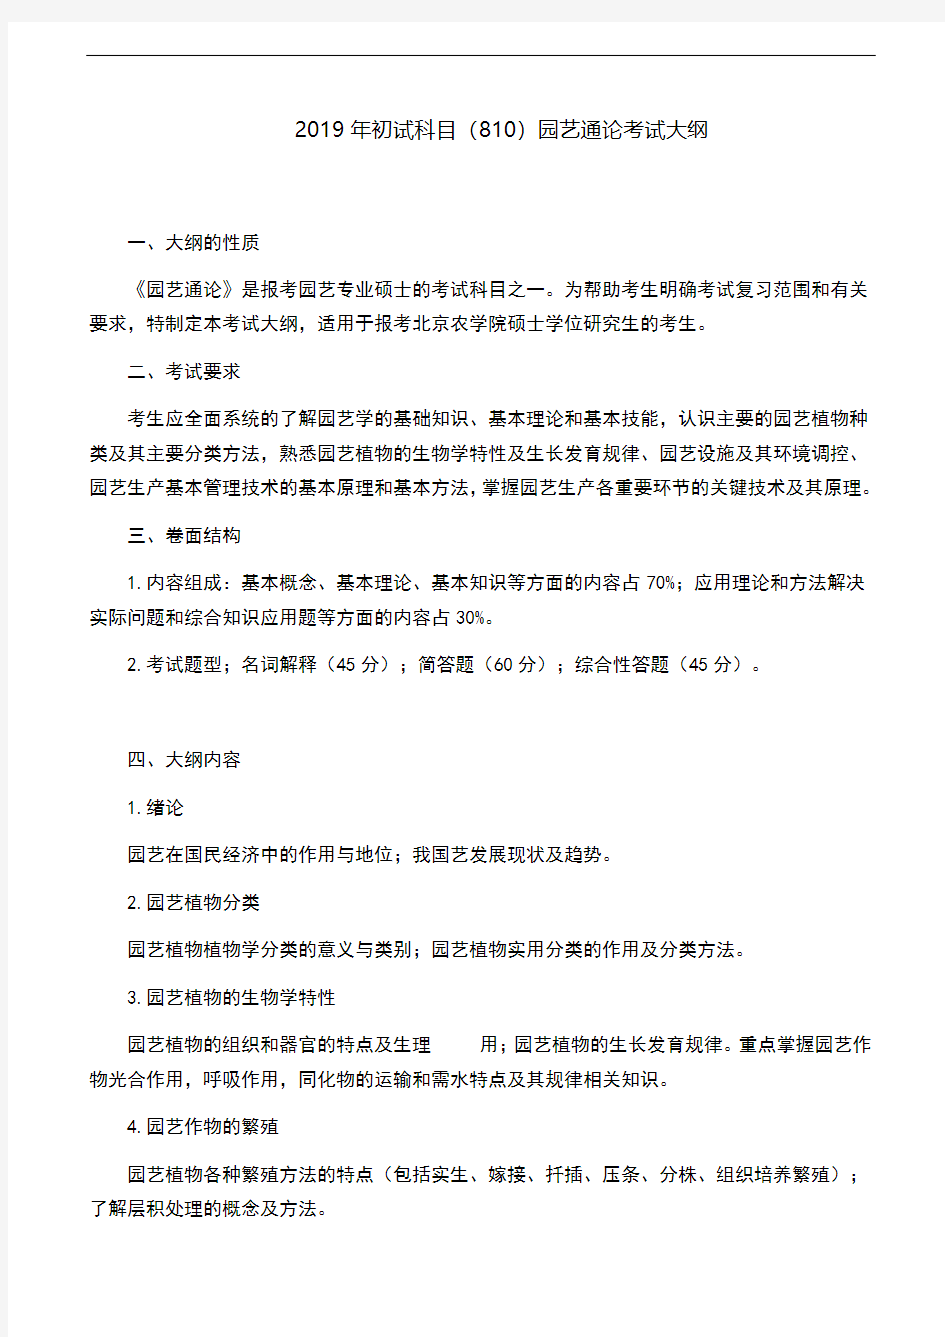 北京农学院-2019年初试科目(810)园艺通论考试大纲